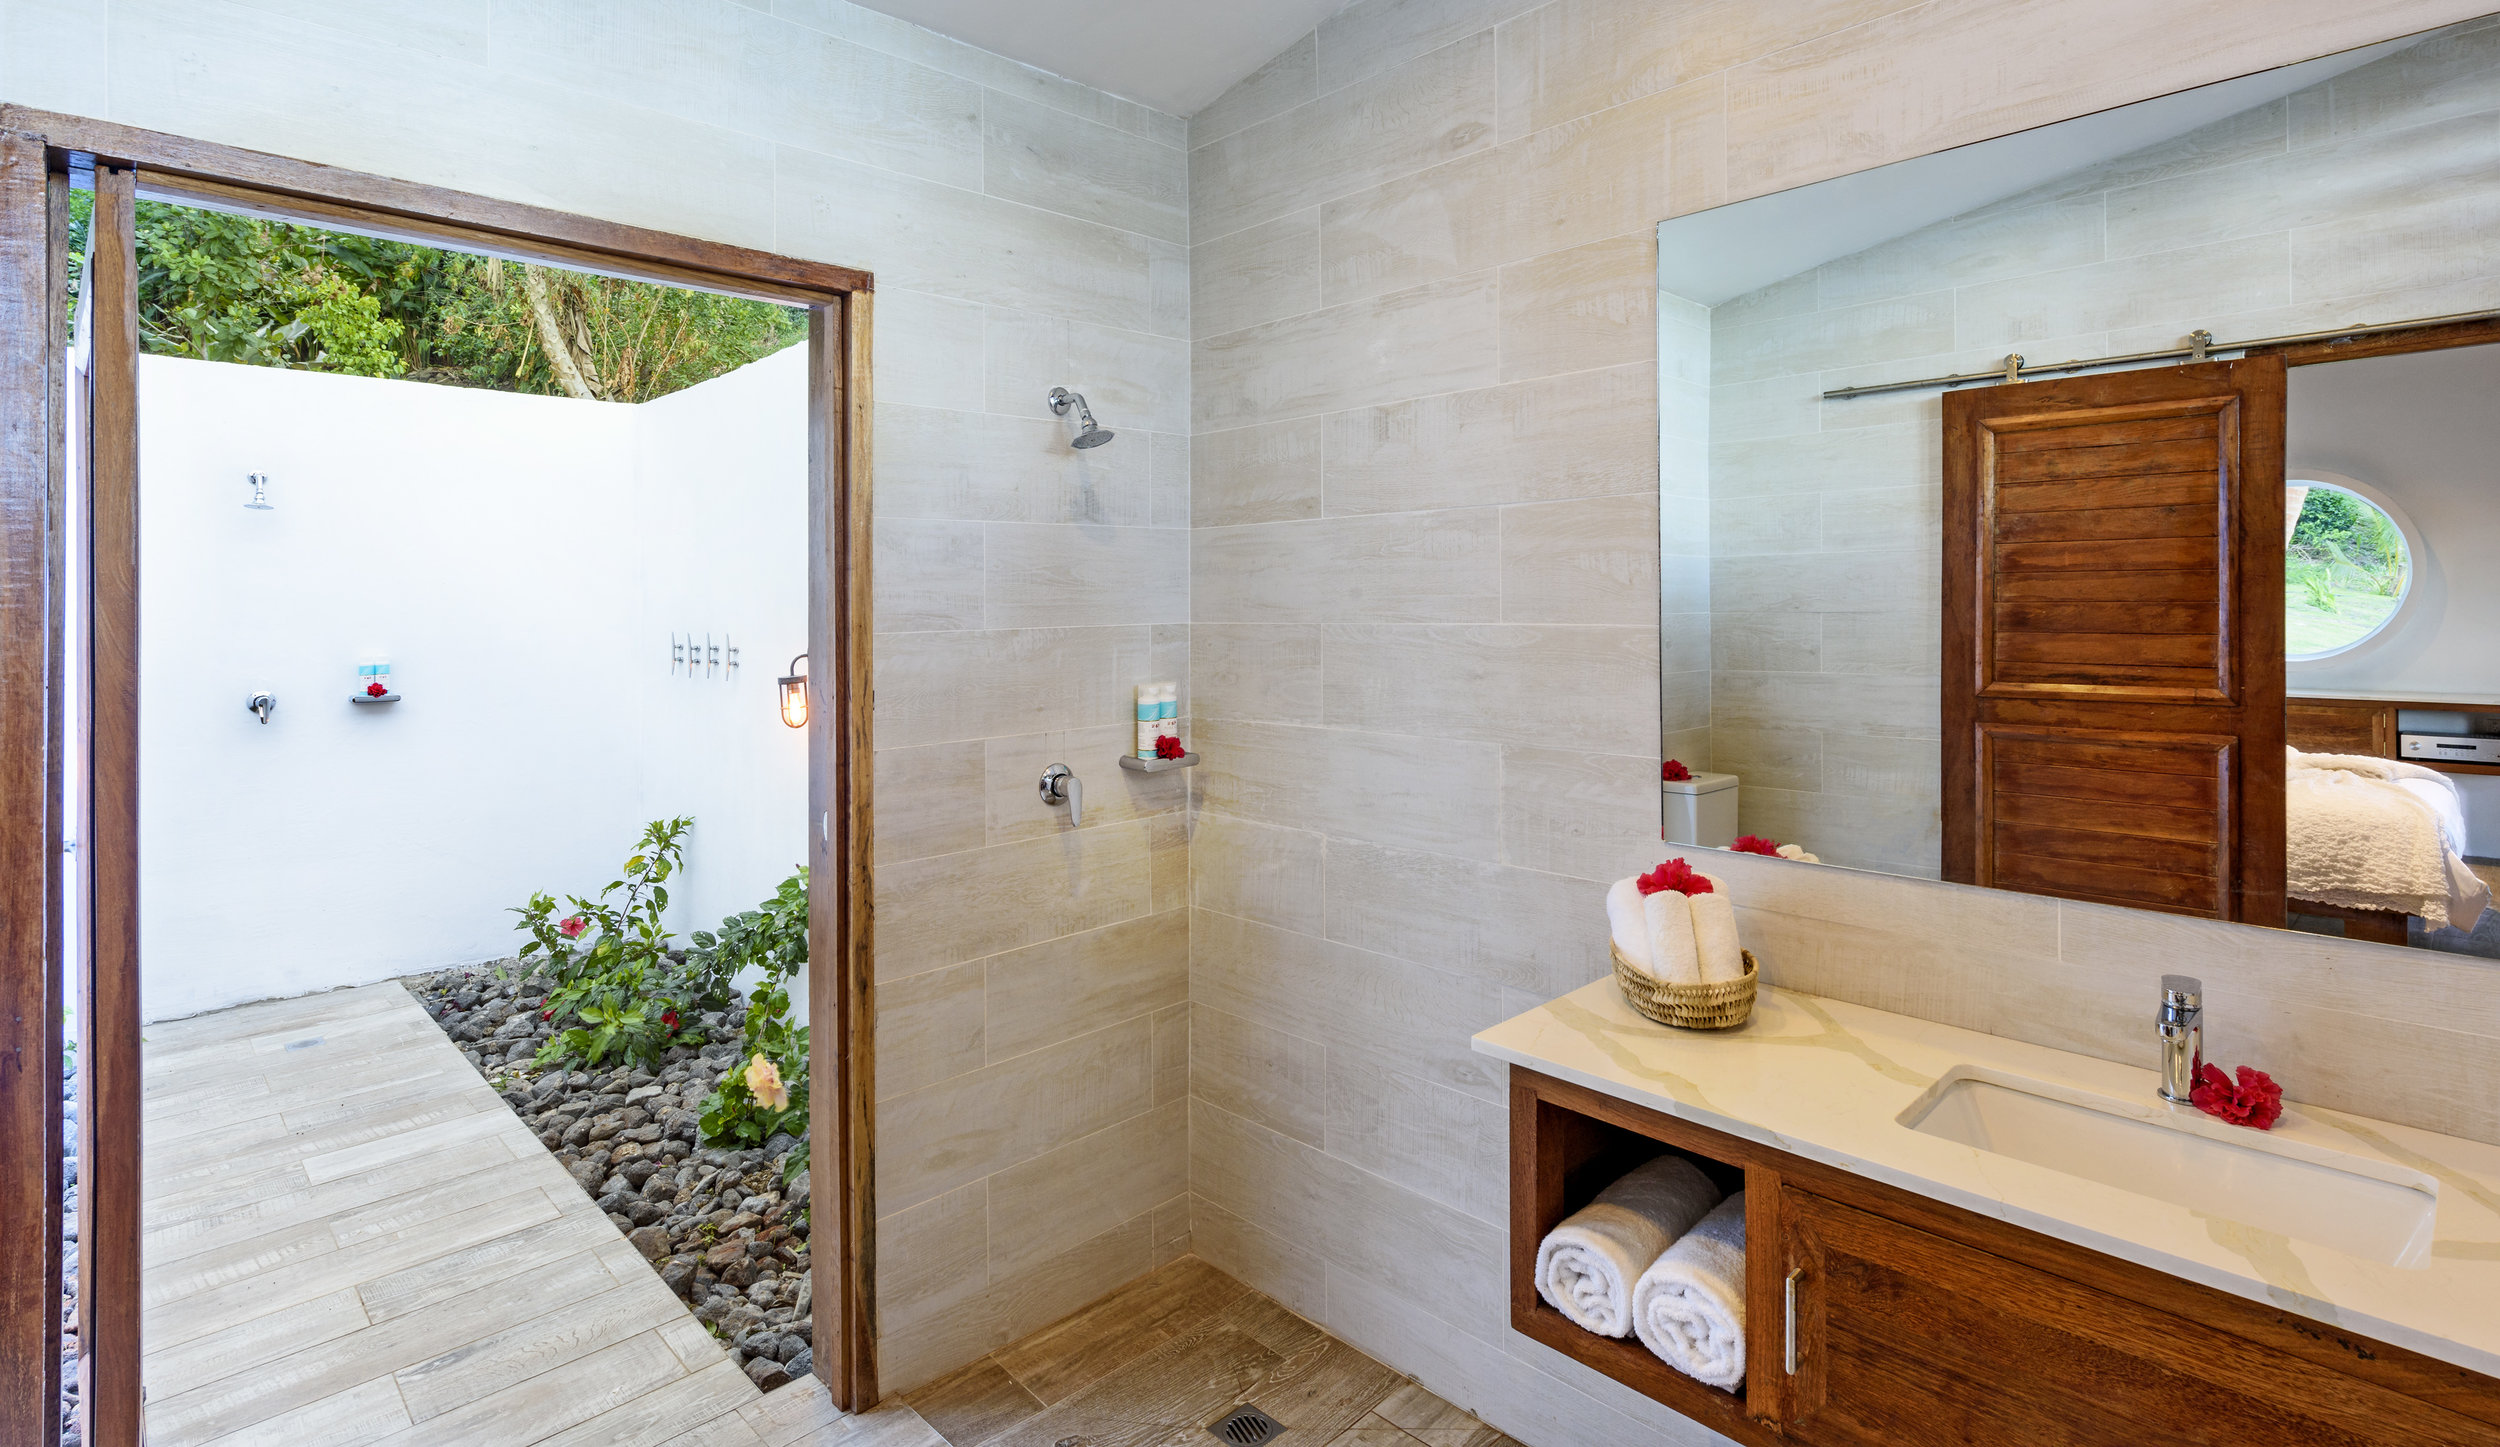 Two-bedroom Royal Retreat - Indoor and Outdoor Bathroom, The Remote Resort Fiji Islands